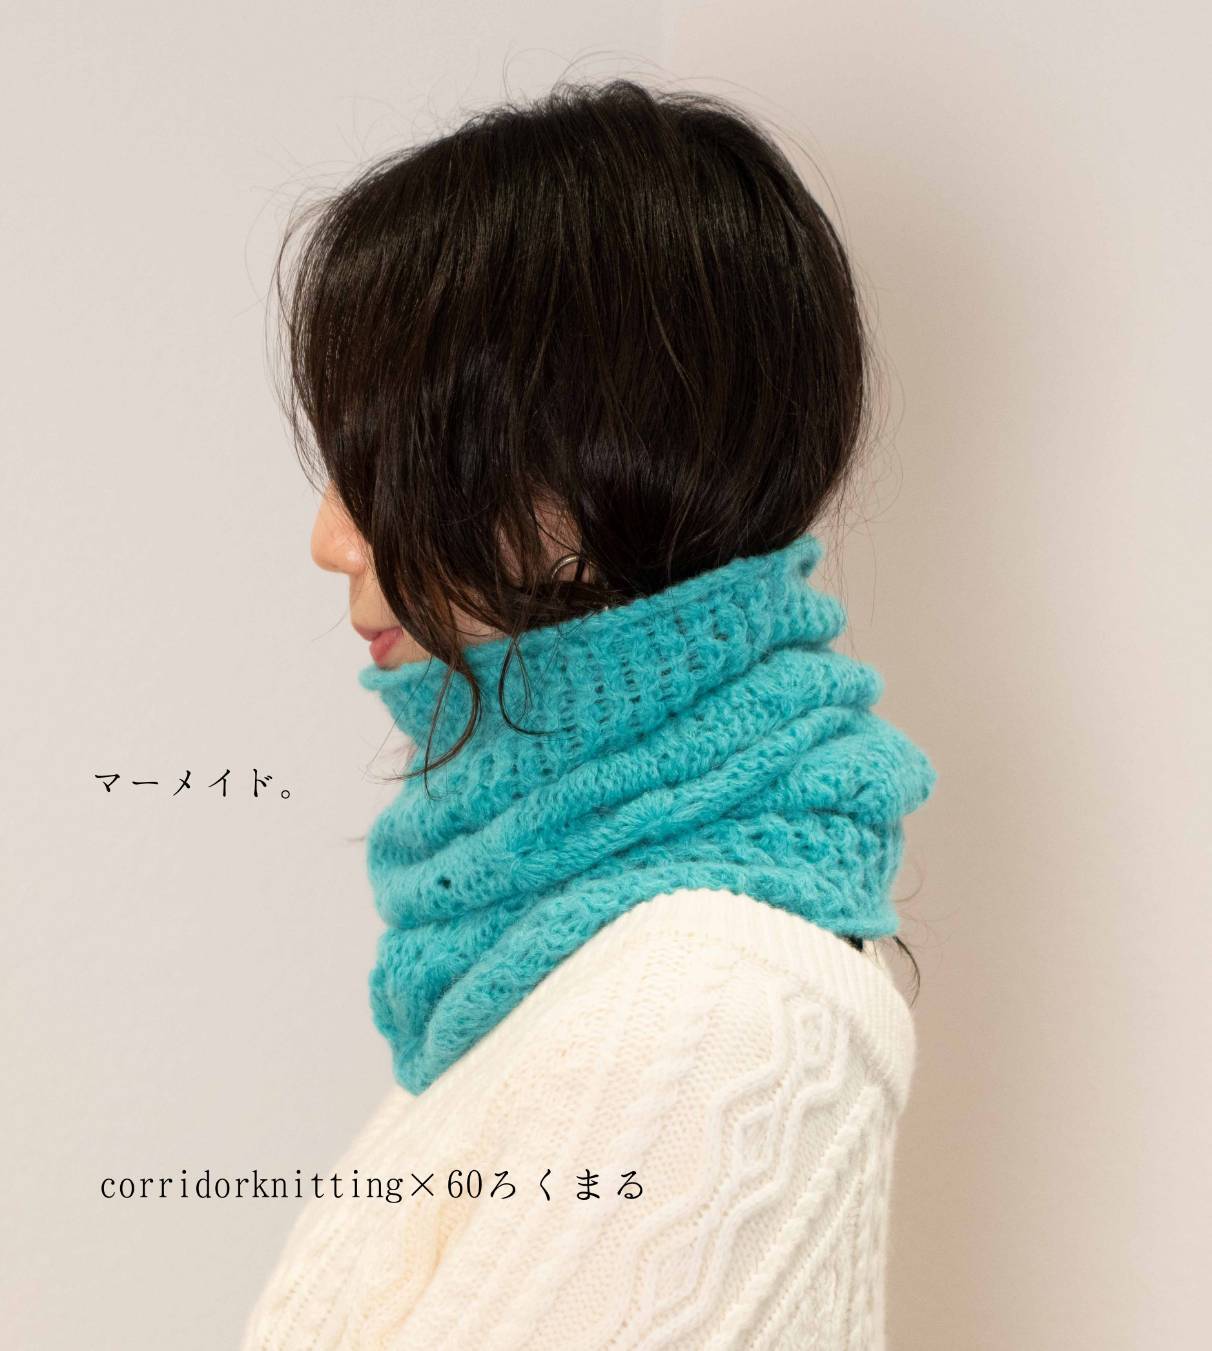 編み物キット(スヌード・カウル) | 60ろくまる編み物キット販売サイト